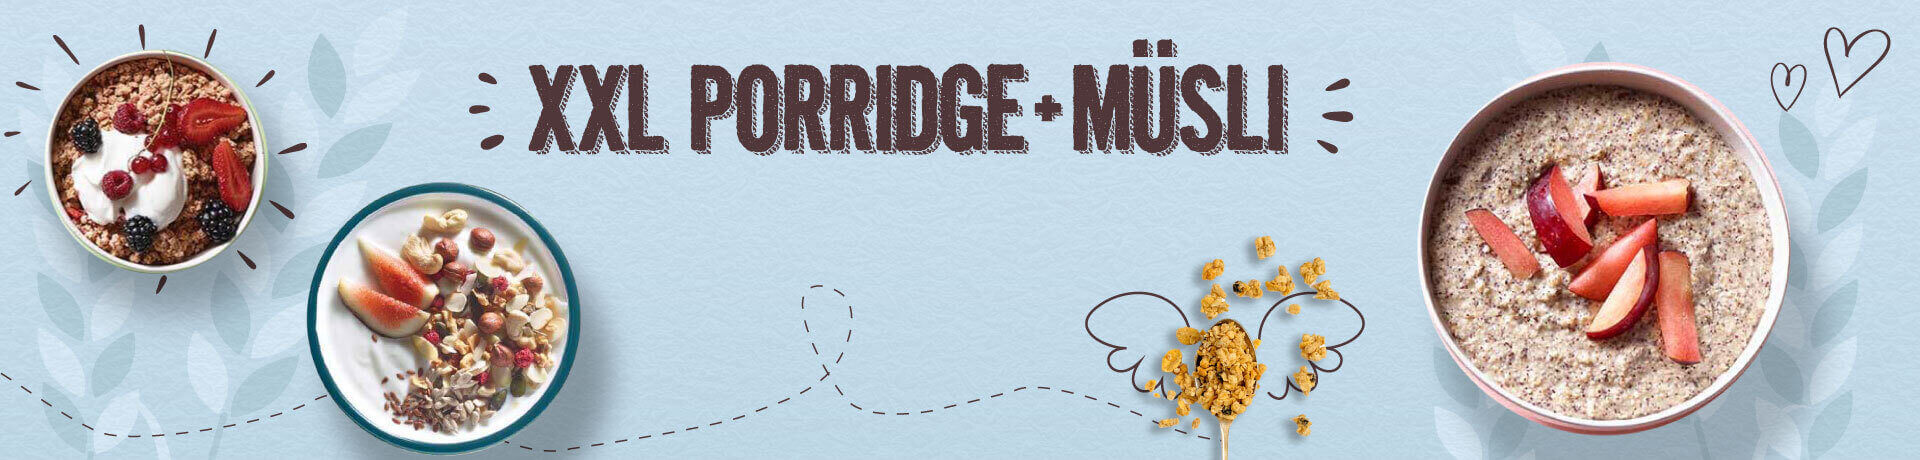 Acquista online Großpackung Porridge & Muesli Verival